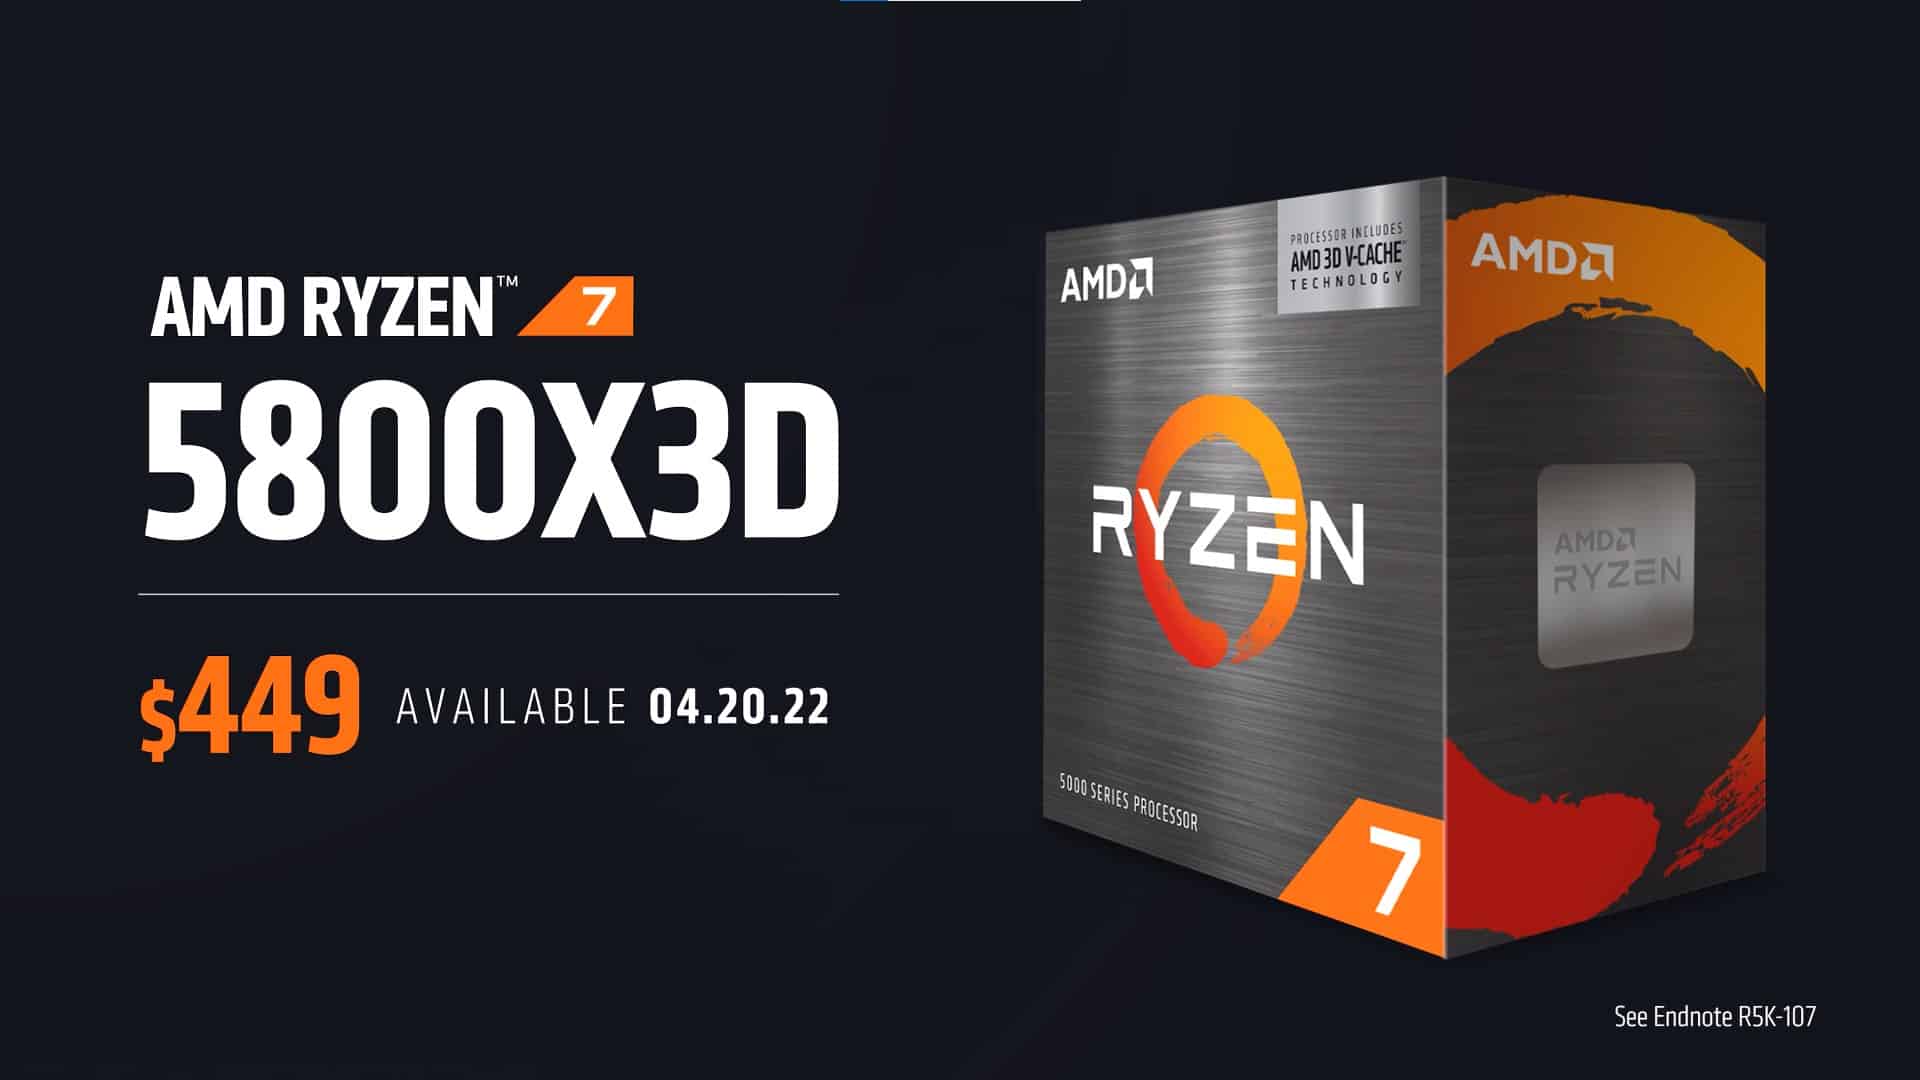 Ryzen 7 5800X3D outperforms Ryzen 7 5800X by 9% in multi-core on Geekbench 5